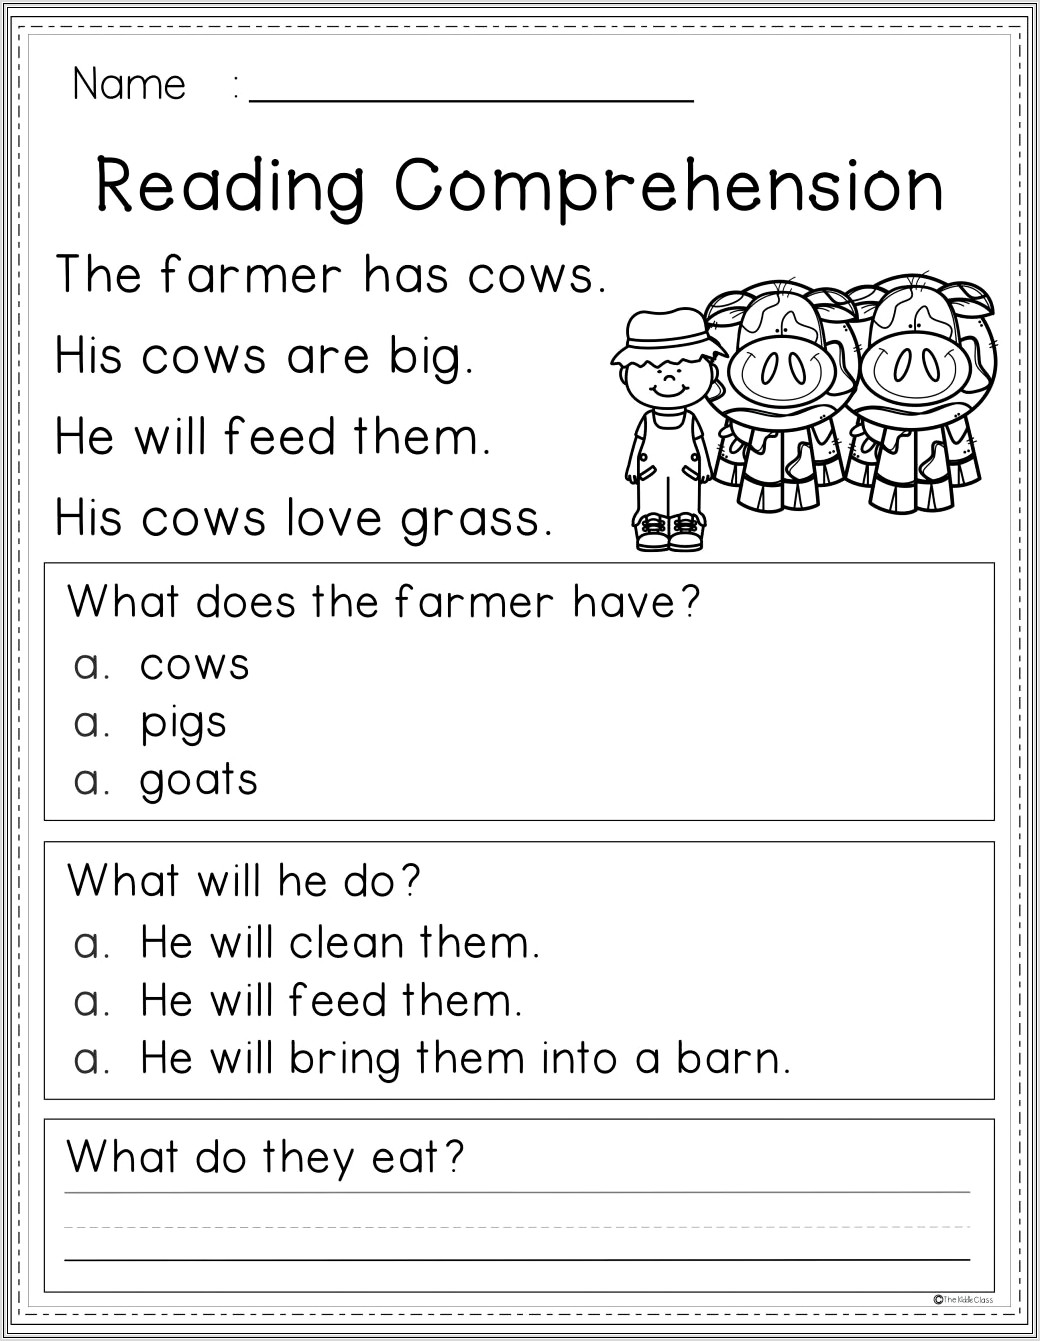 Comprehension Reading Worksheets For 3rd Grade